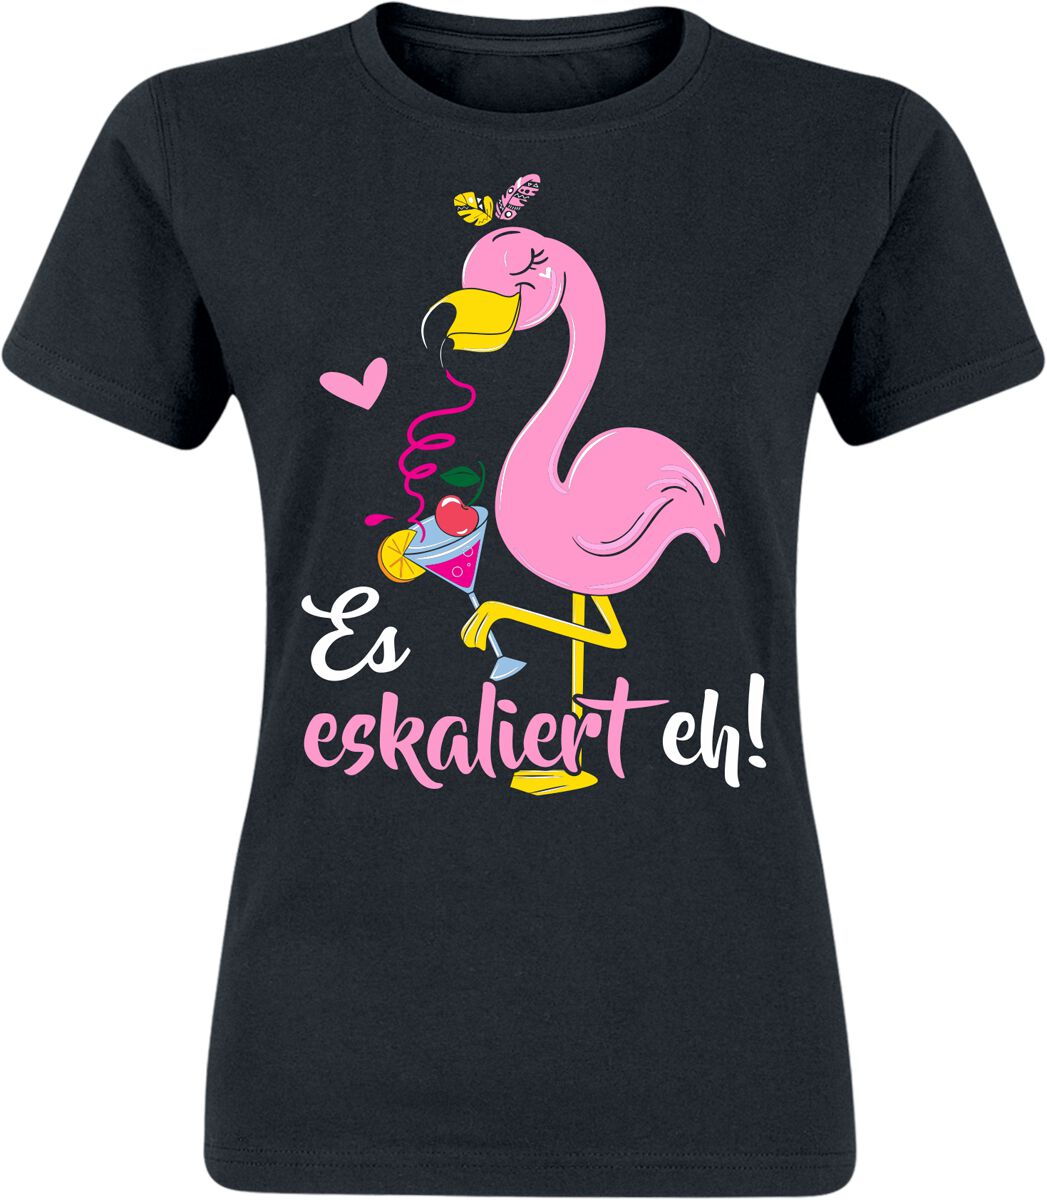 Alkohol & Party Flamingo - Es eskaliert eh! T-Shirt schwarz in XXL